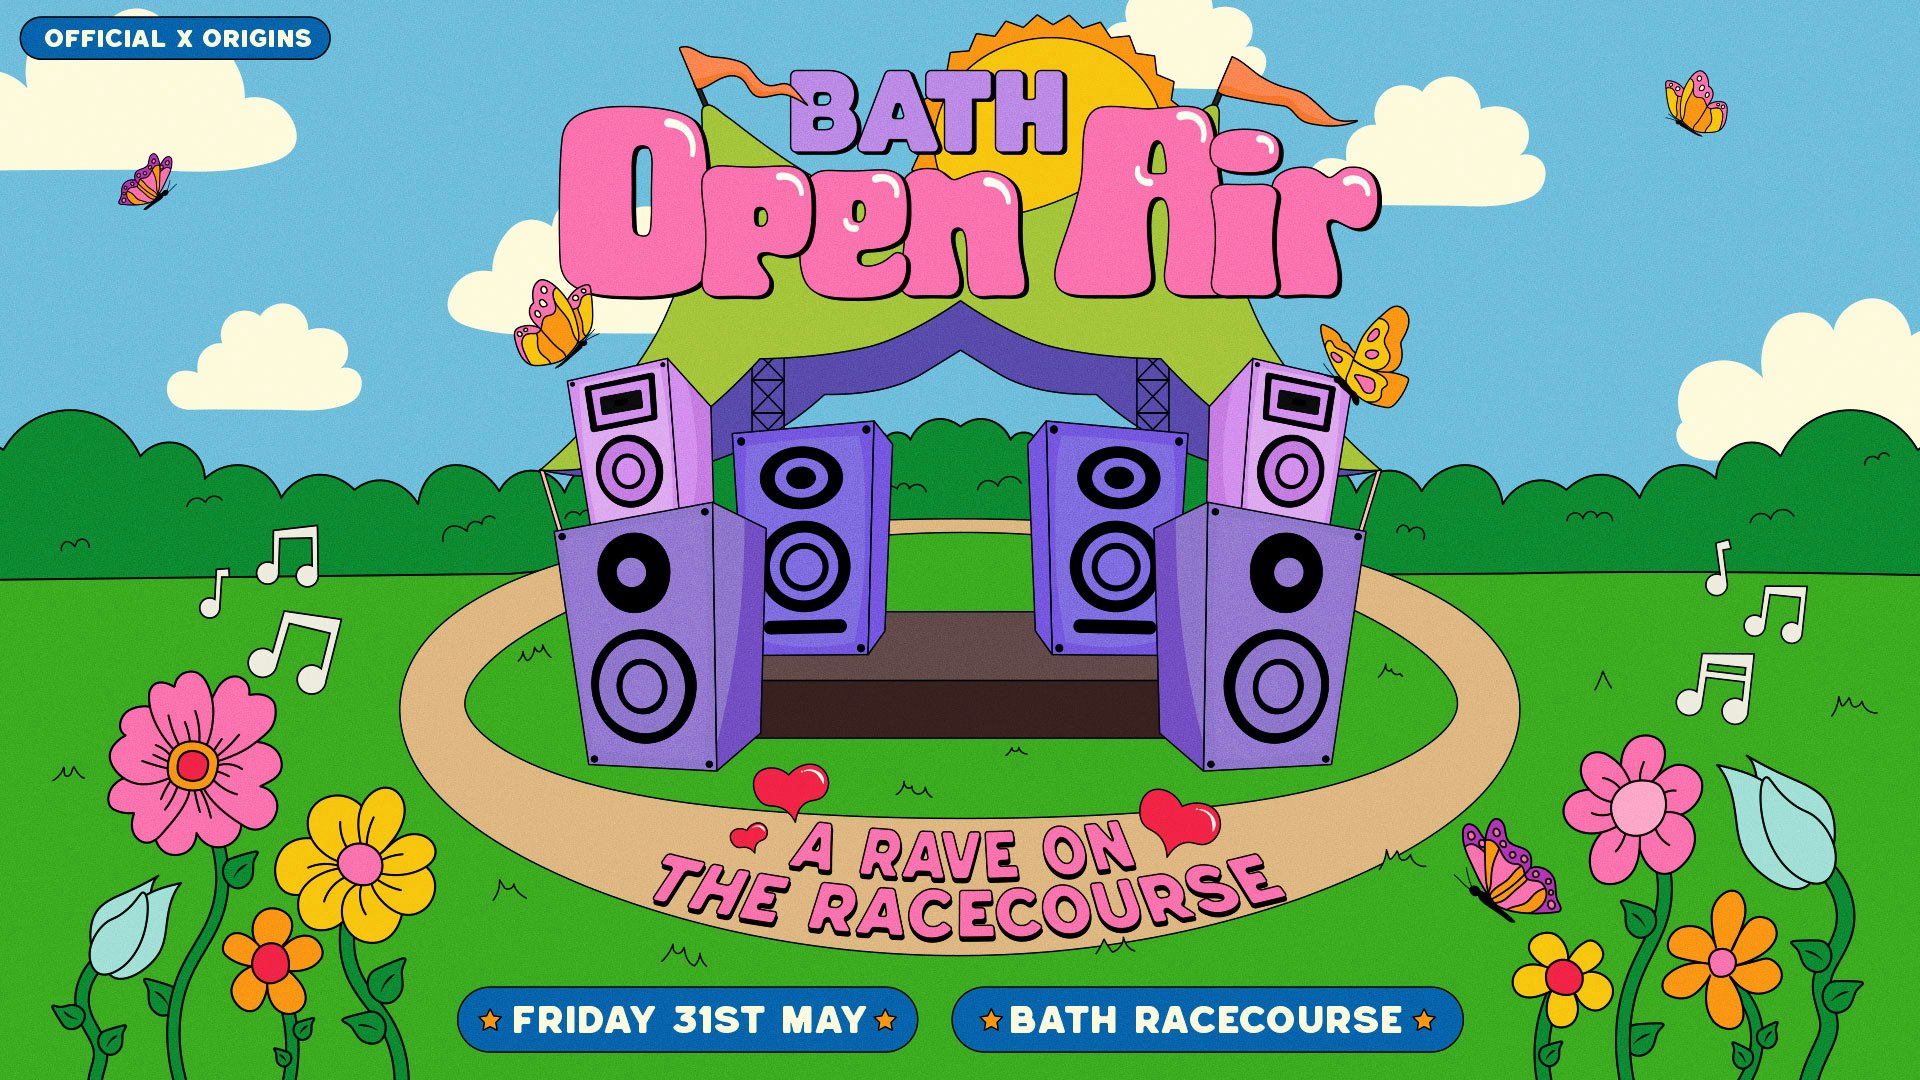 [Official x Origins] Bath Open Air @ The Racecourse